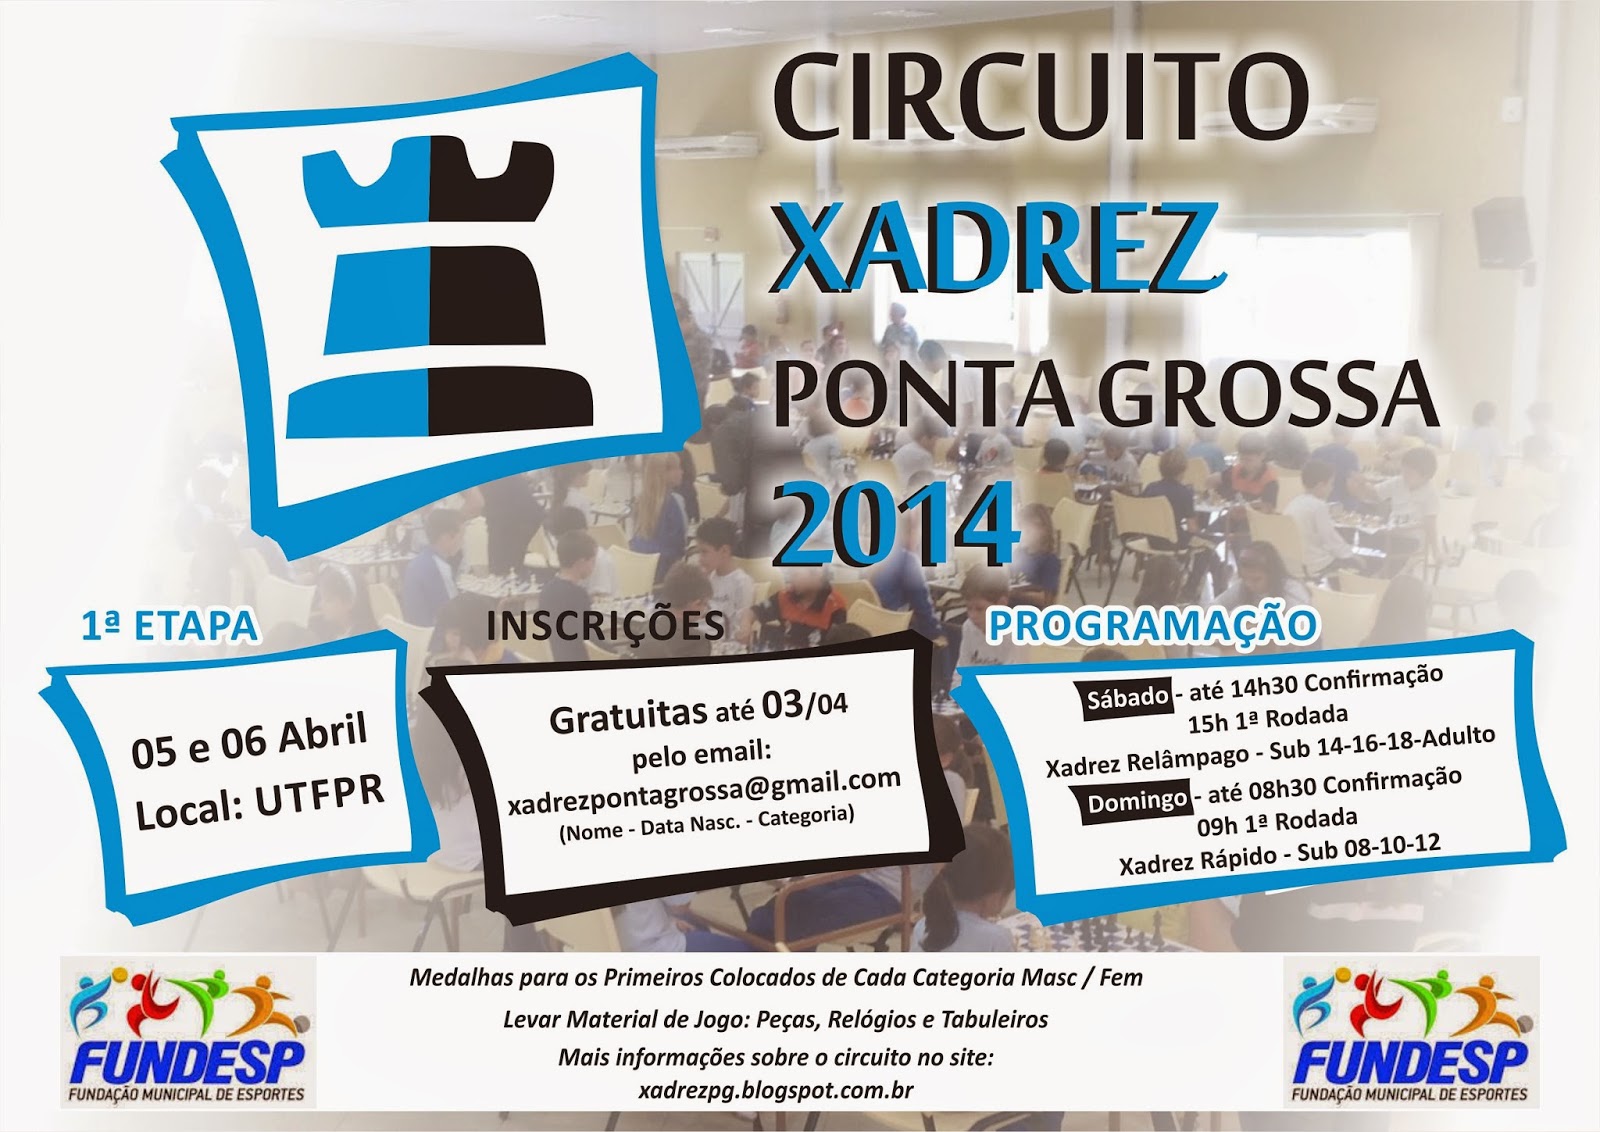 Circuito de Xadrez Online agita competidores em Ponta Grossa